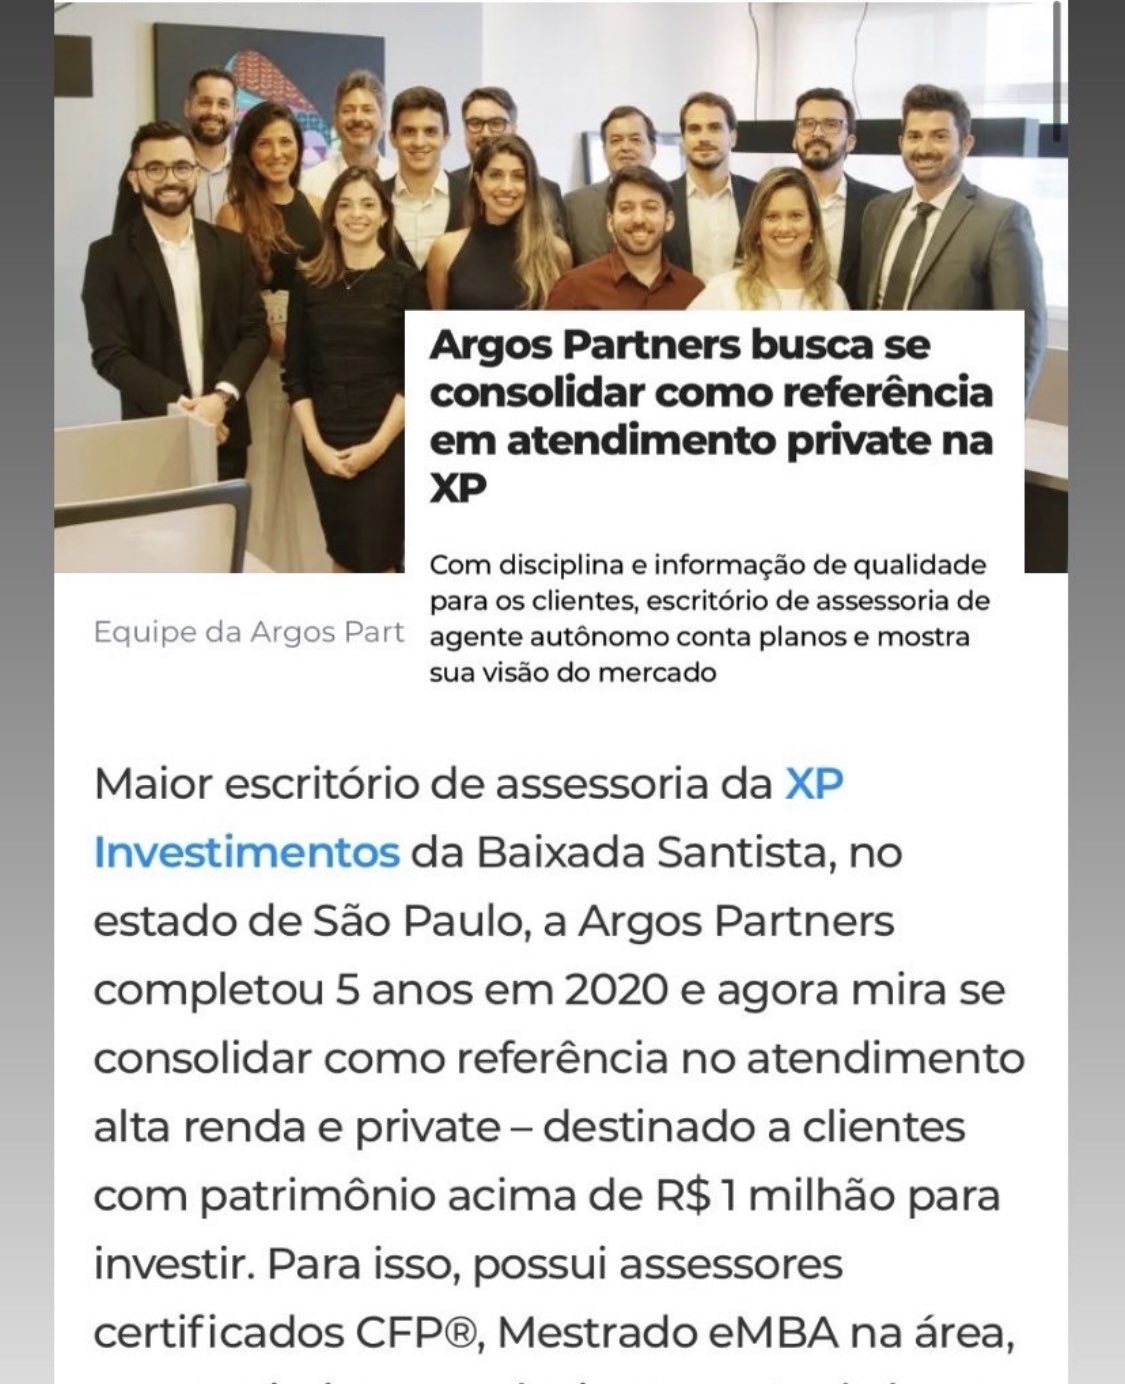 Samantha Vianna on X: Hoje tem live com Samuel Ponsoni, analista de fundos  da XP Investimentos e @WagSfc pelo Instagram da Argos Partners ✔️  Conecte-se.  / X